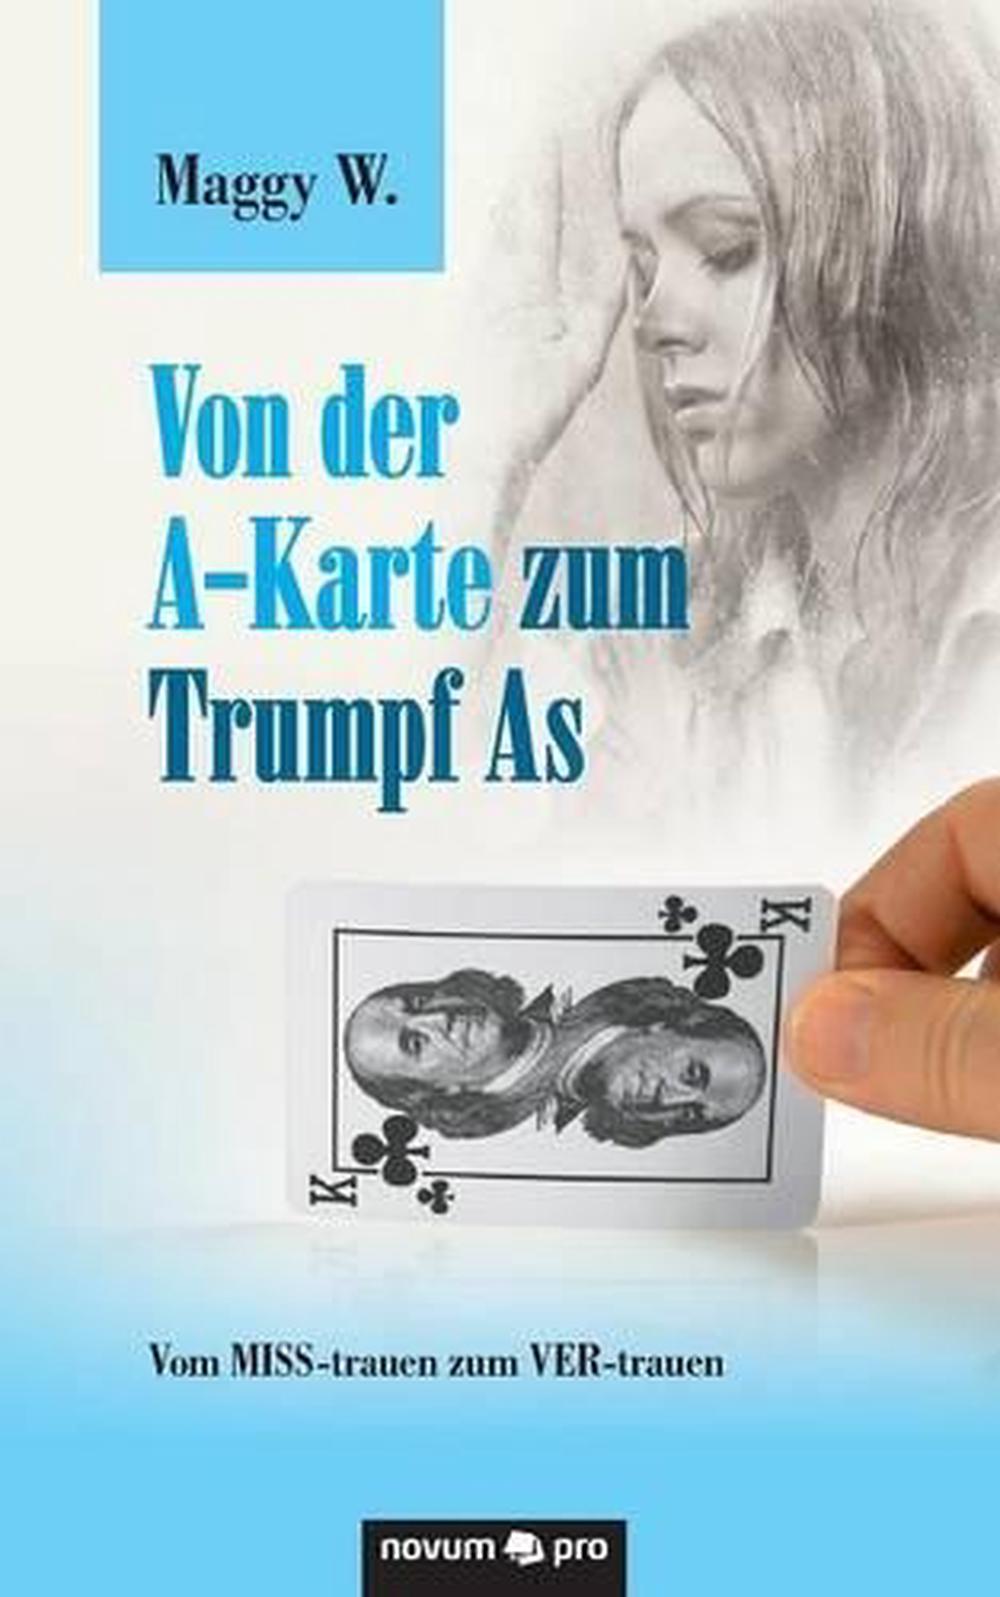 Von Der A-karte Zum Trumpf As by Maggy W. (German) Paperback Book Free